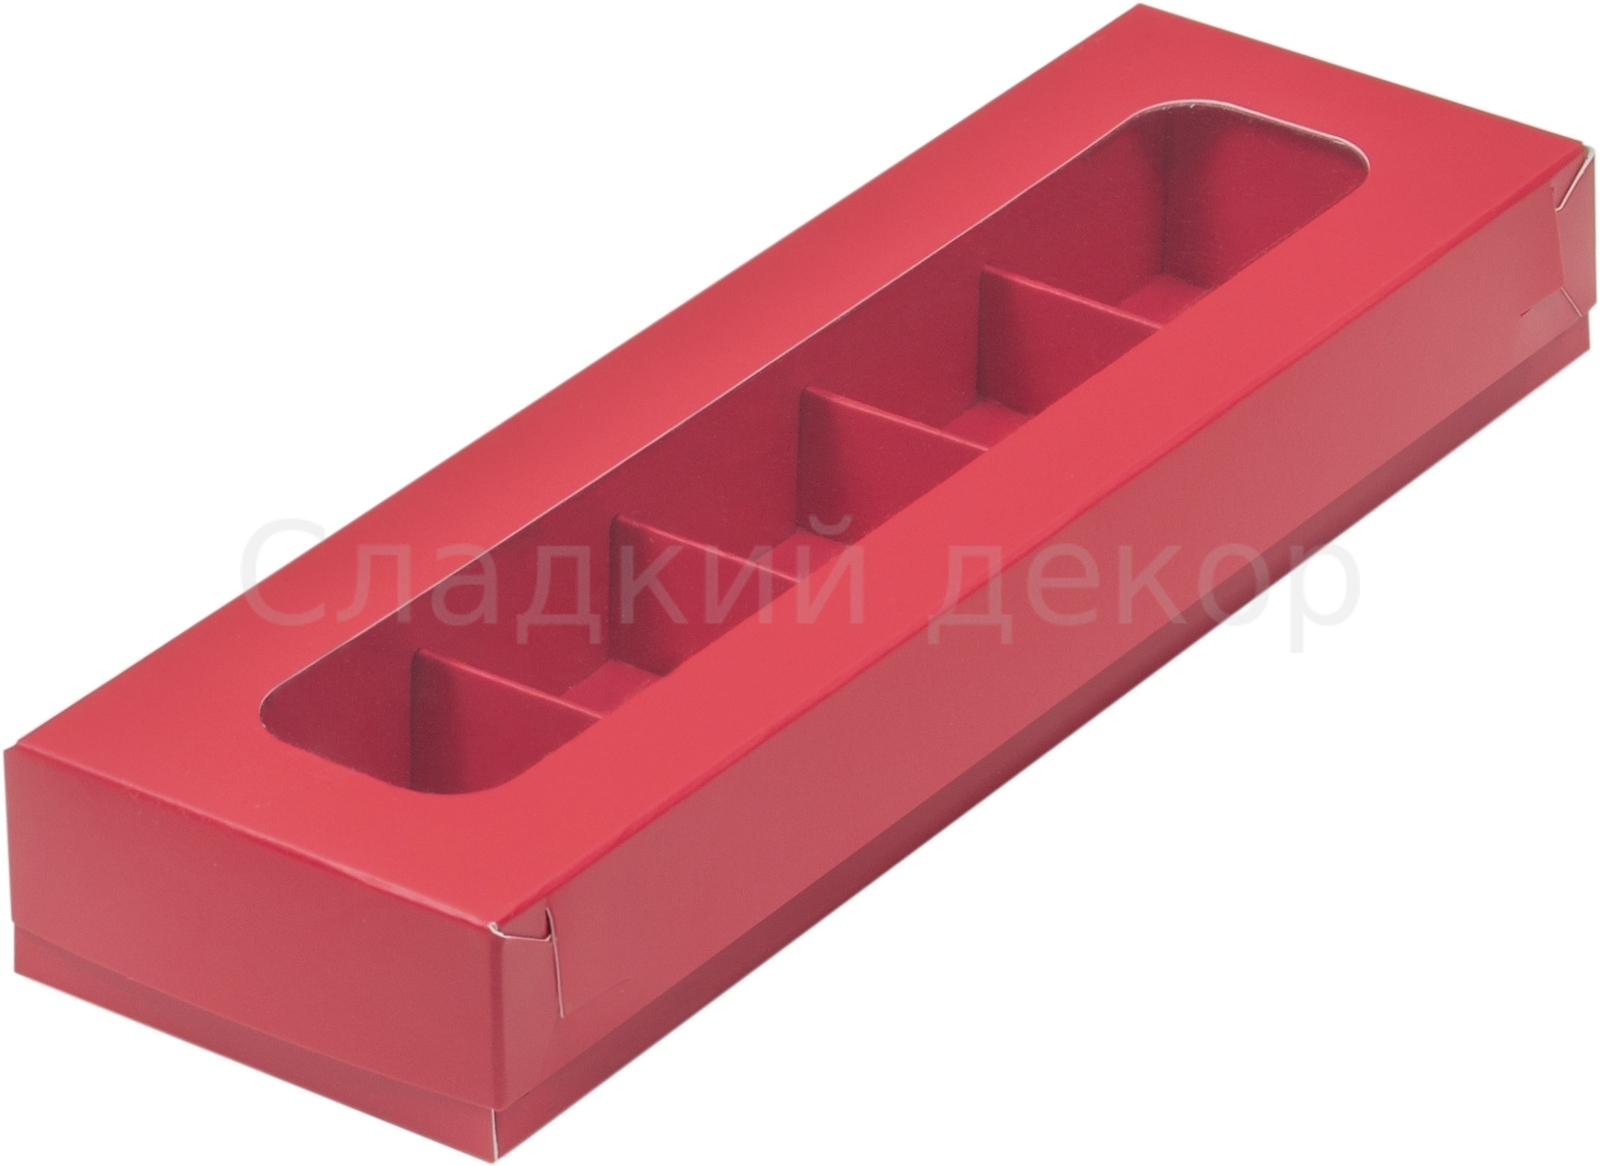 Коробка для конфет на 5 шт, 23,5х7х3 см, красная